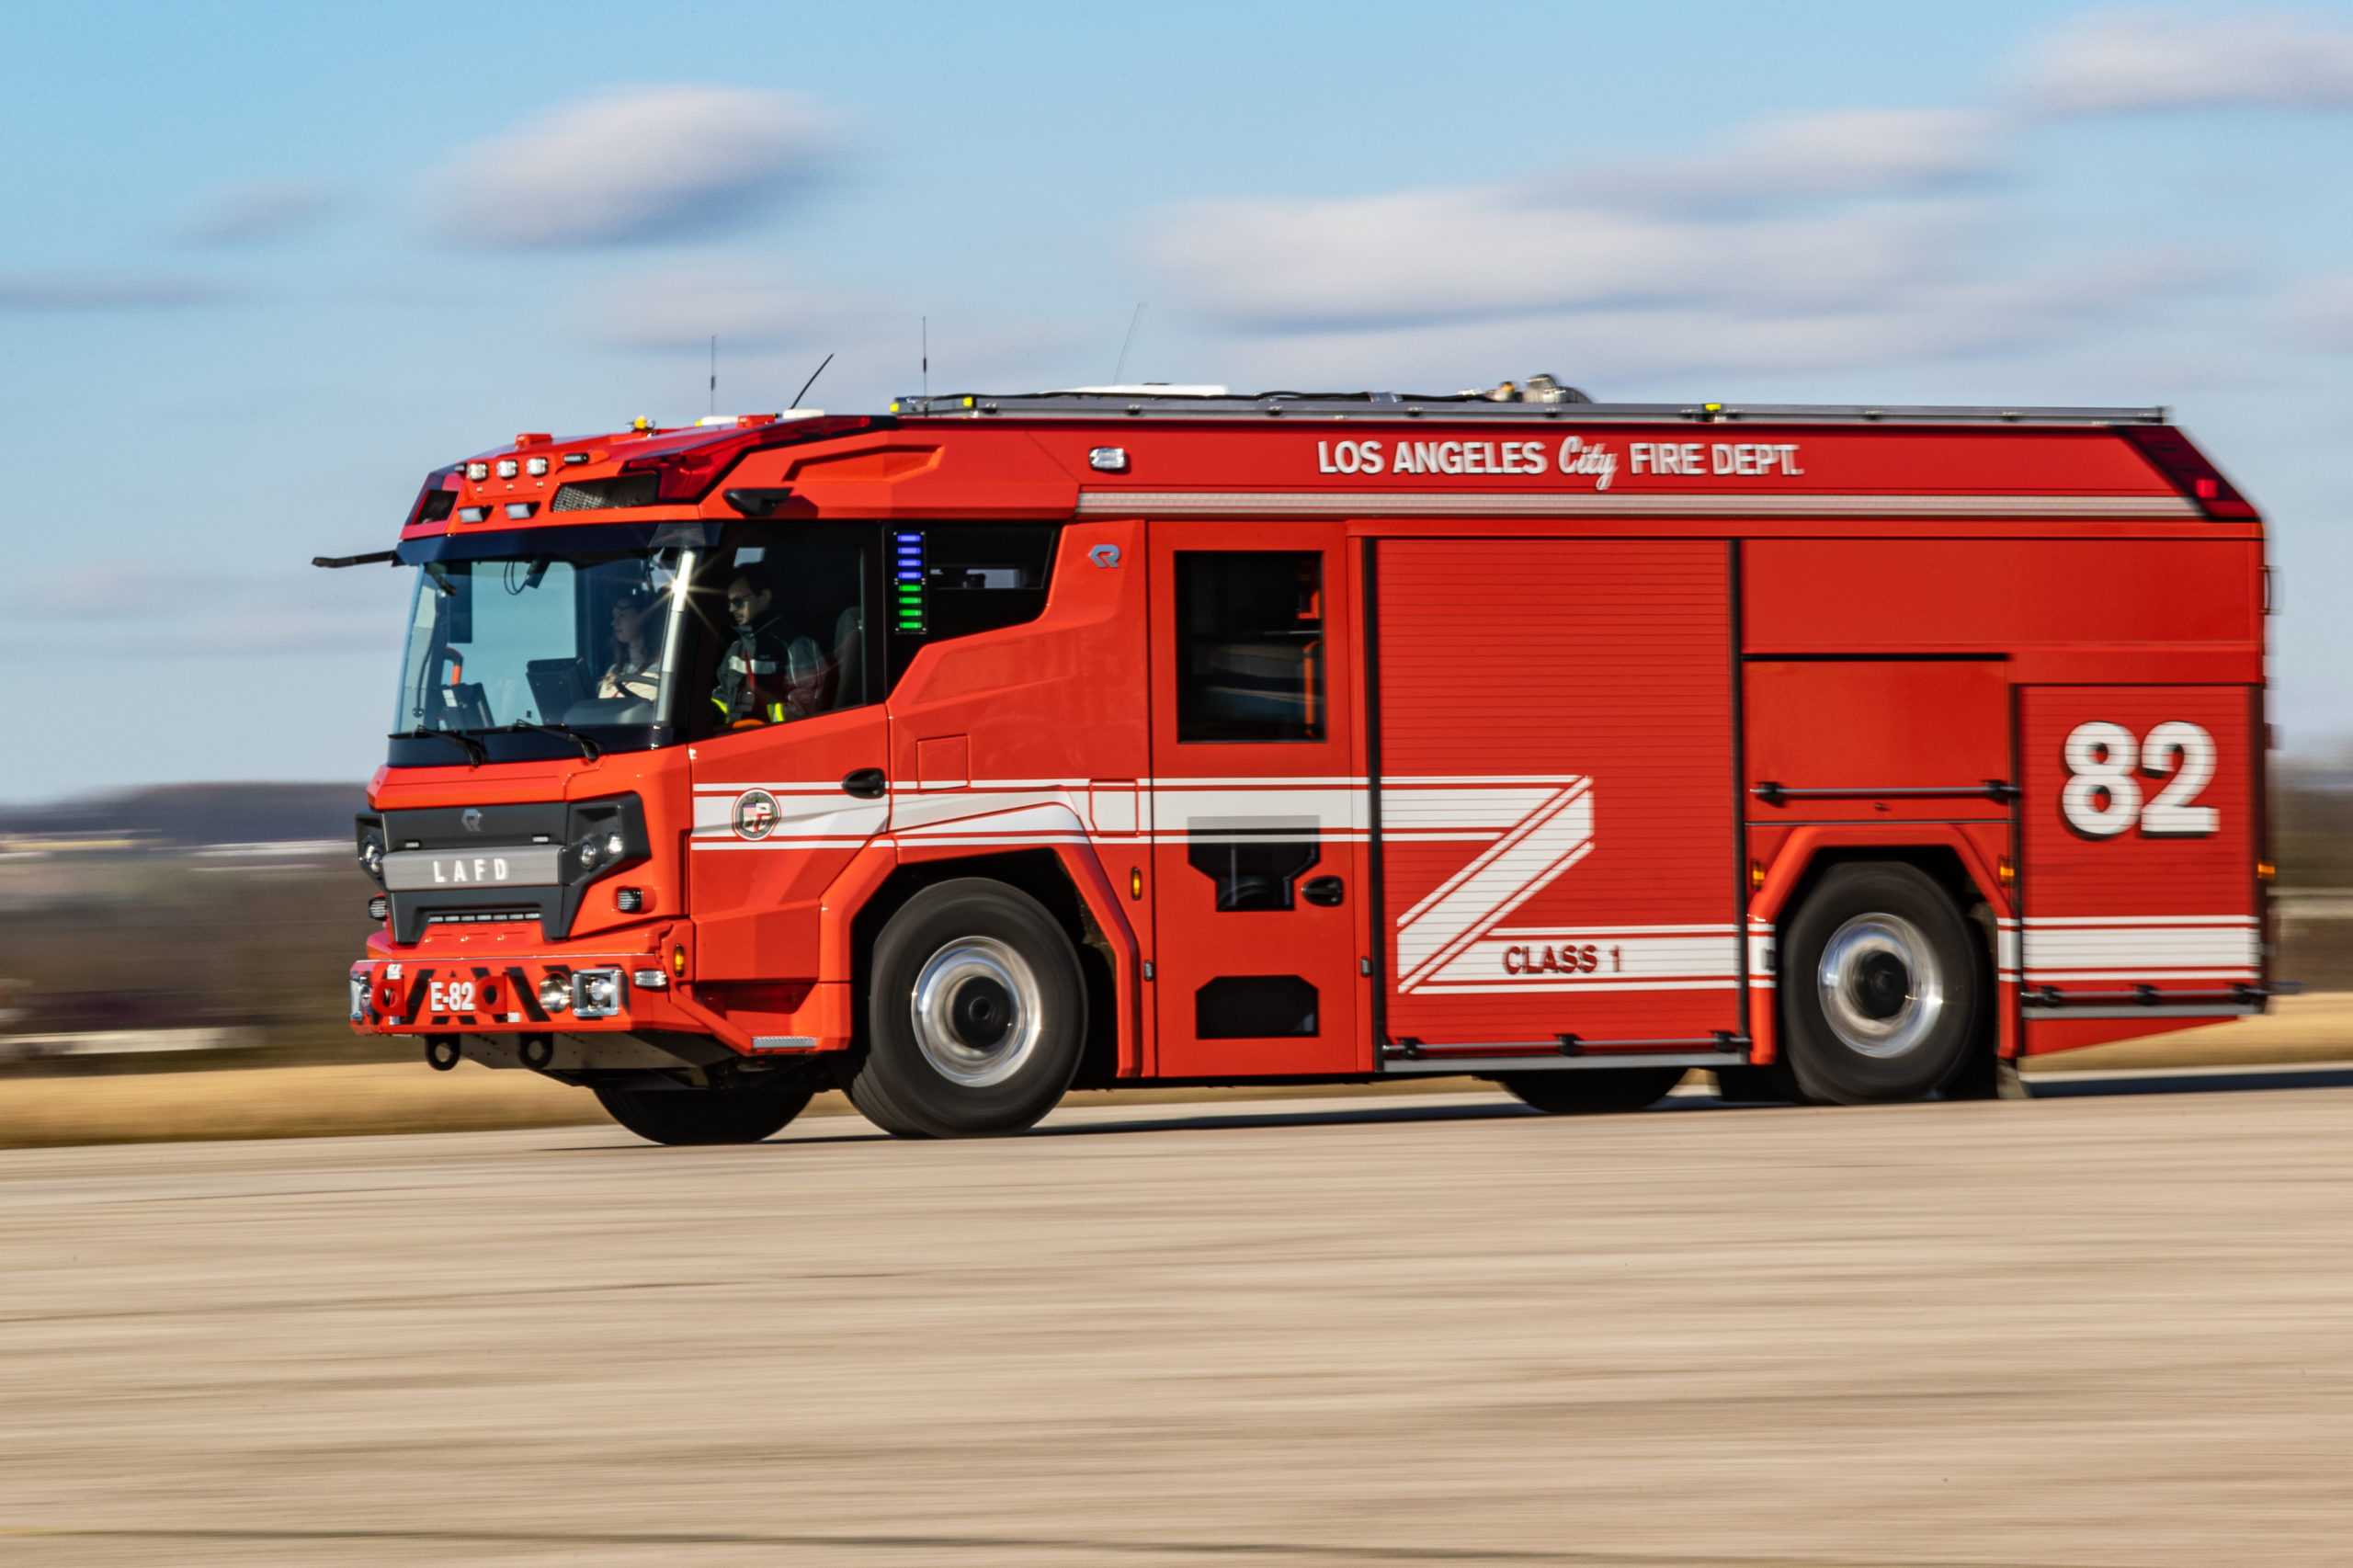 LAFD despliega el primer camión de bomberos eléctrico en los EE. UU.